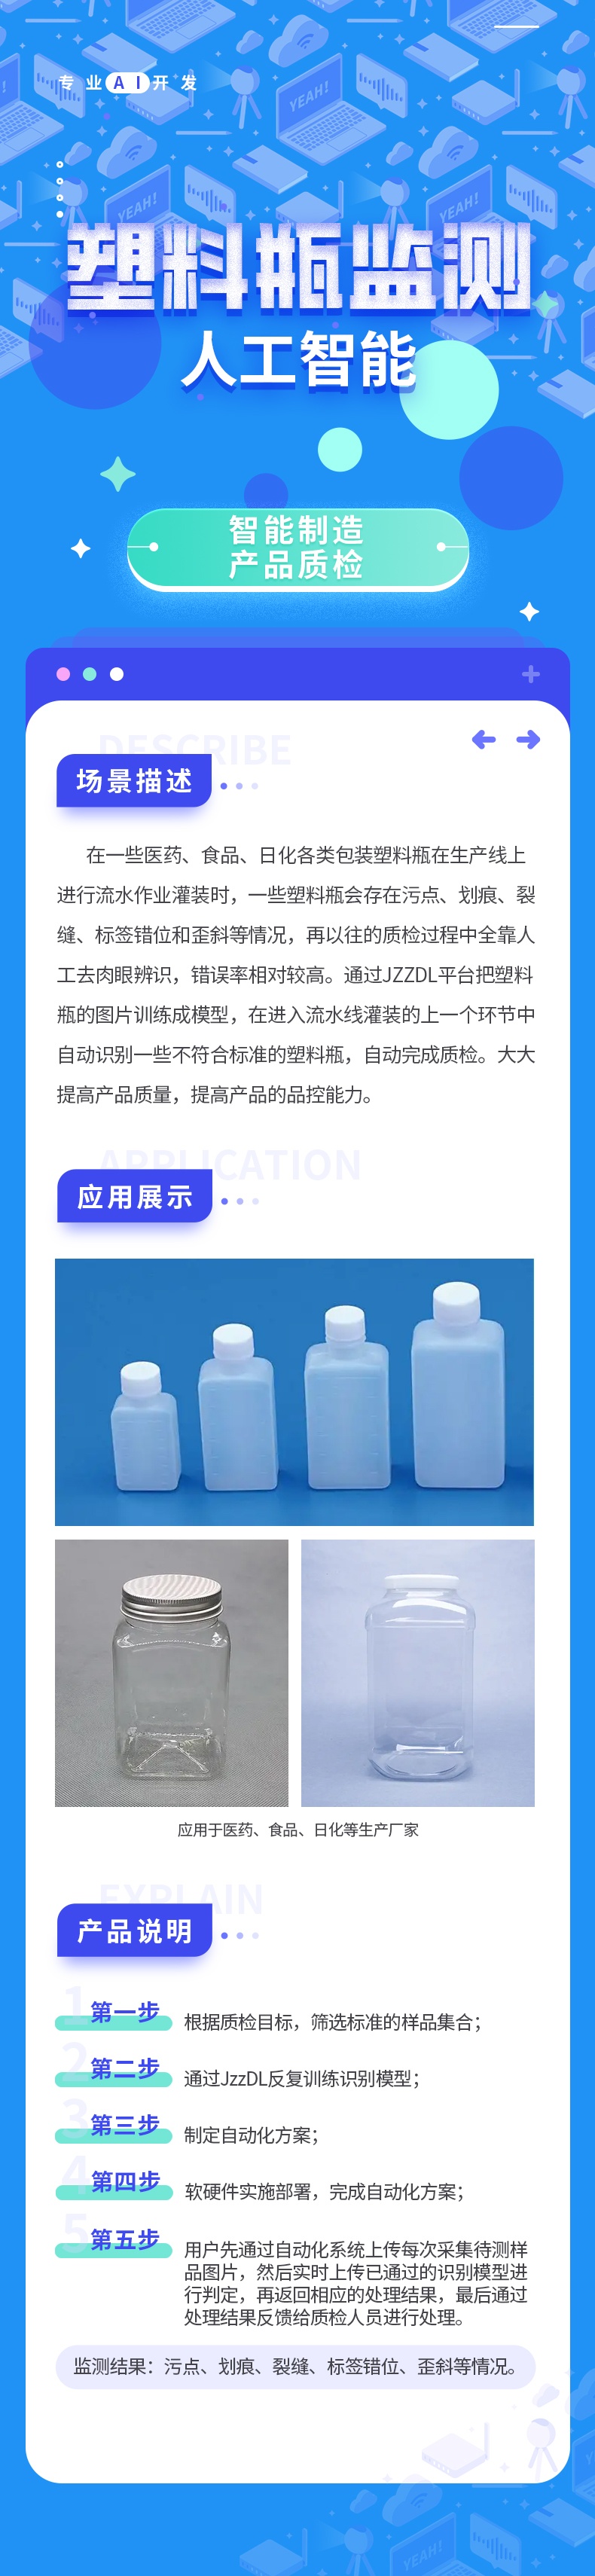 1塑料瓶监测1_看图王.jpg